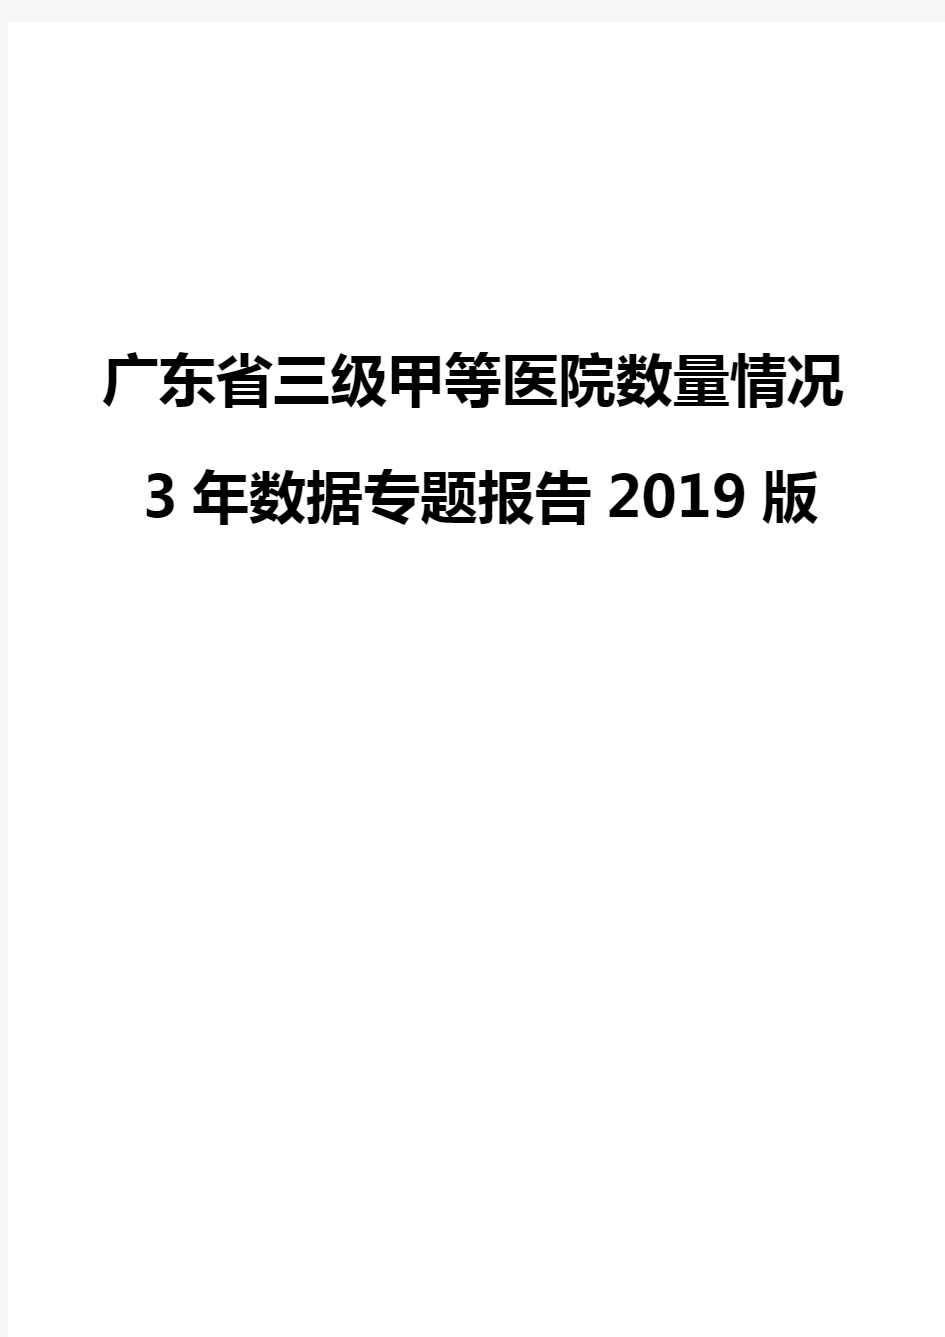 广东省三级甲等医院数量情况3年数据专题报告2019版